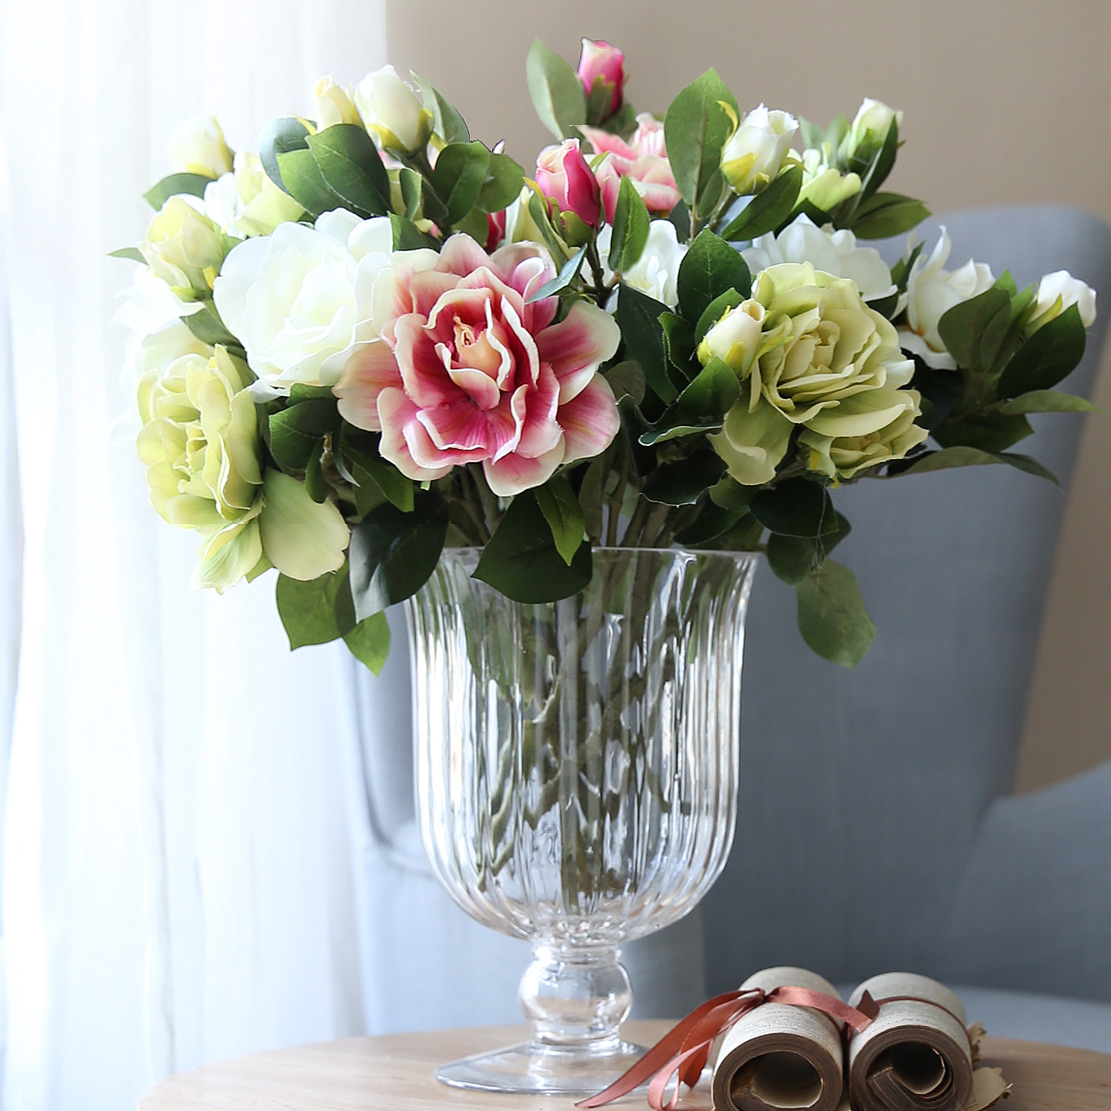 Розы и тюльпаны в одной вазе. Цветы в вазе. Букеты в вазах. Цветы в вазе на столе. Красивые цветы в вазах.